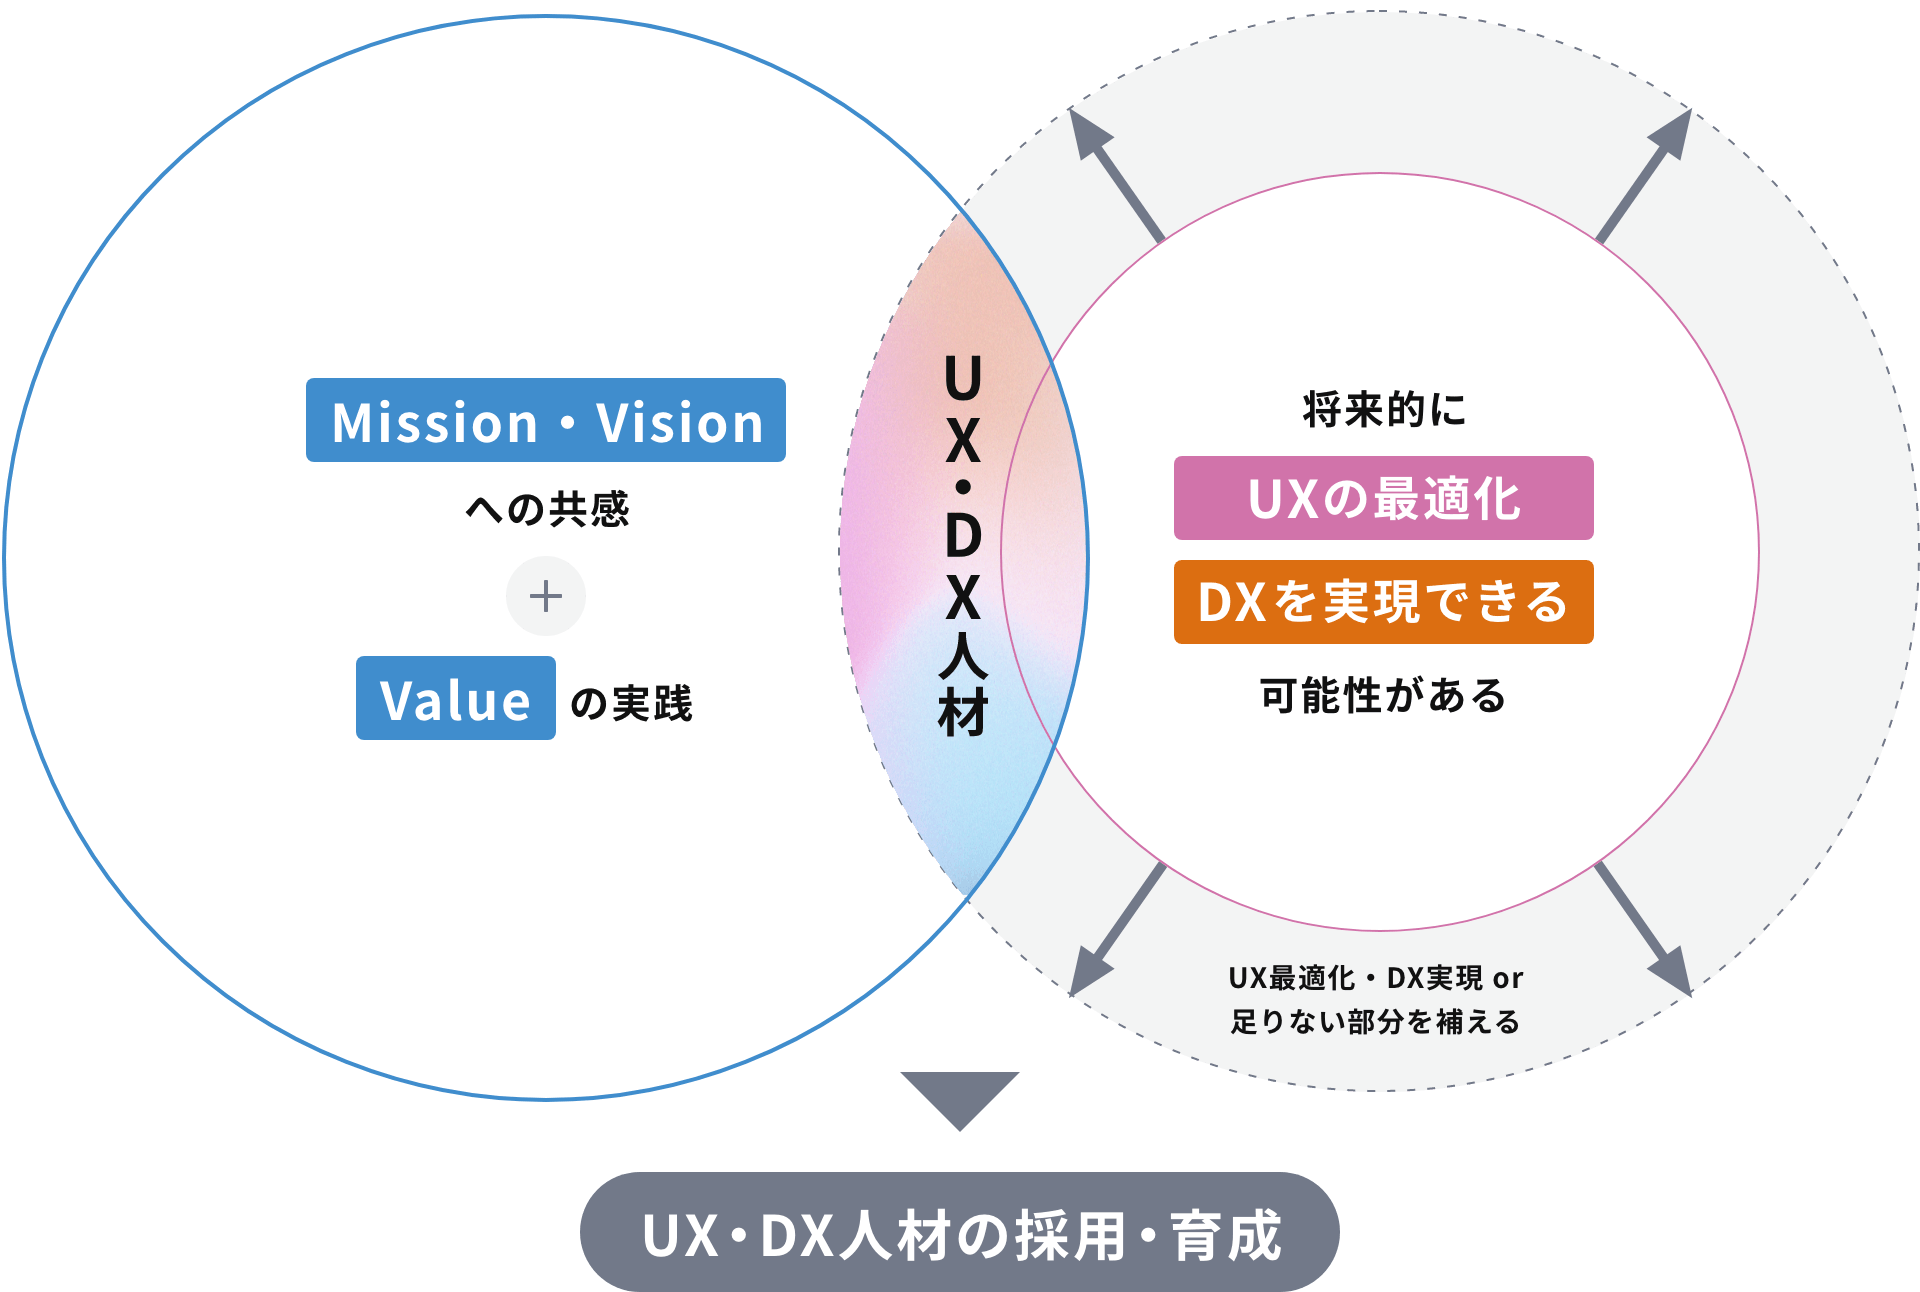 UX・DX人材の採用・育成 Mission・Visionへの共感+Valueの実績 UX・DX人材 将来的にUXの最適化 DXを実現できる可能性がある UX最適化・DX実績or足りない部分を補える